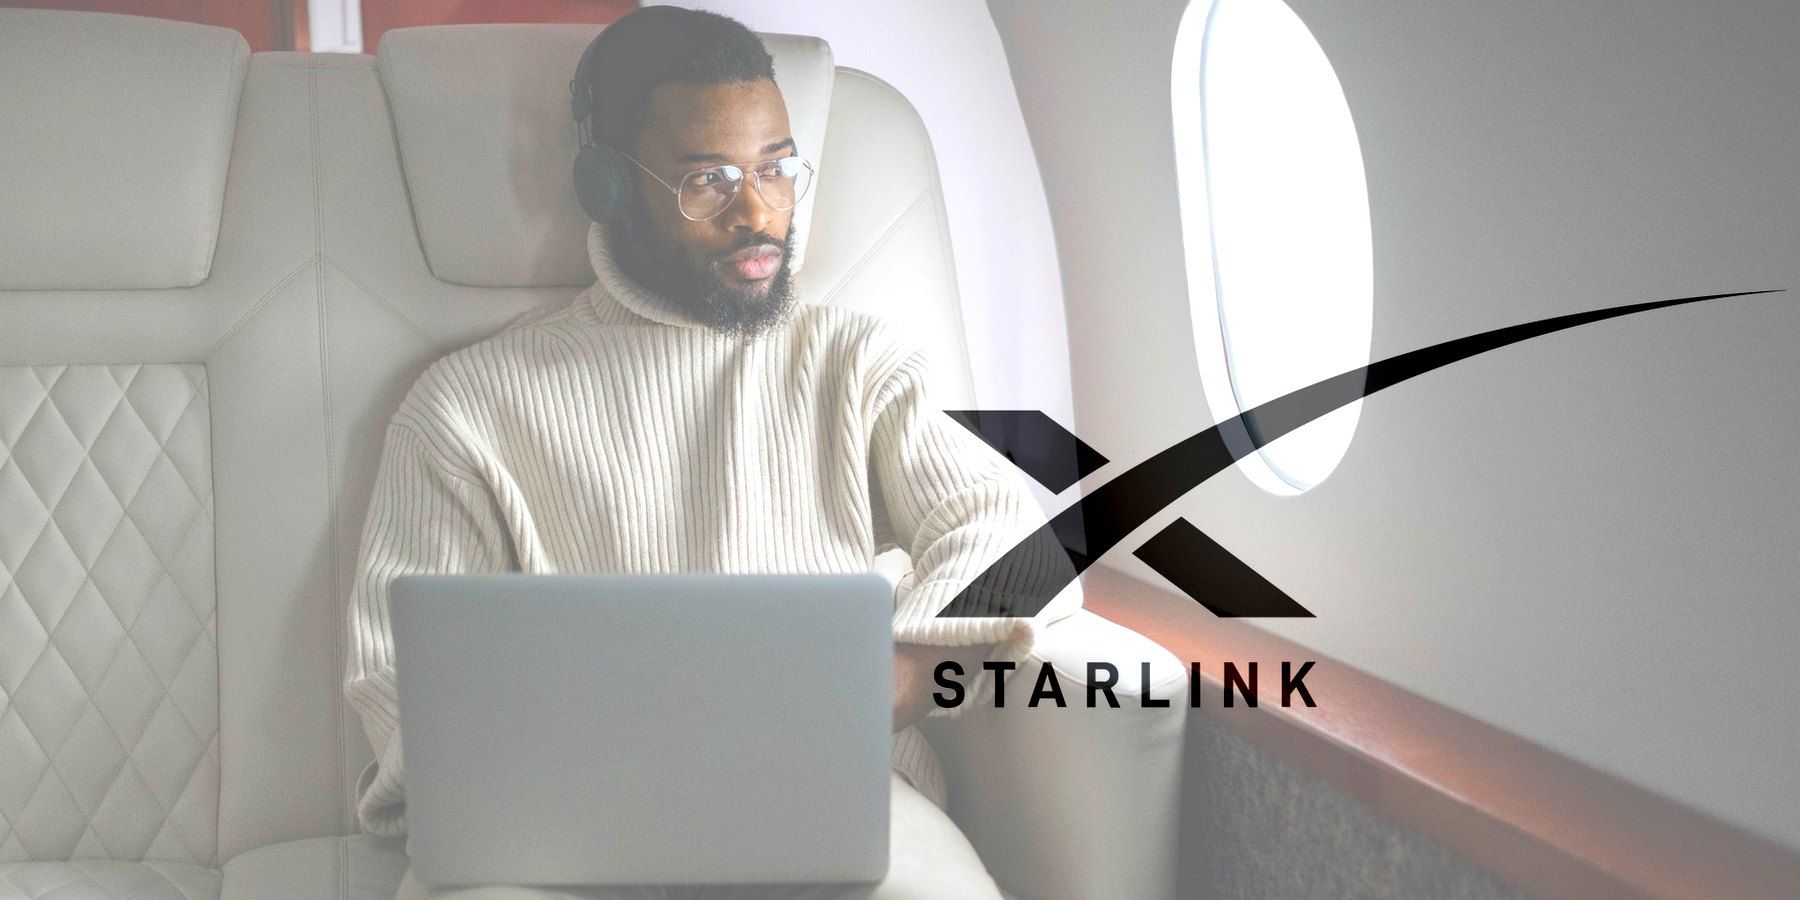 Starlink satellite internet service in flight.